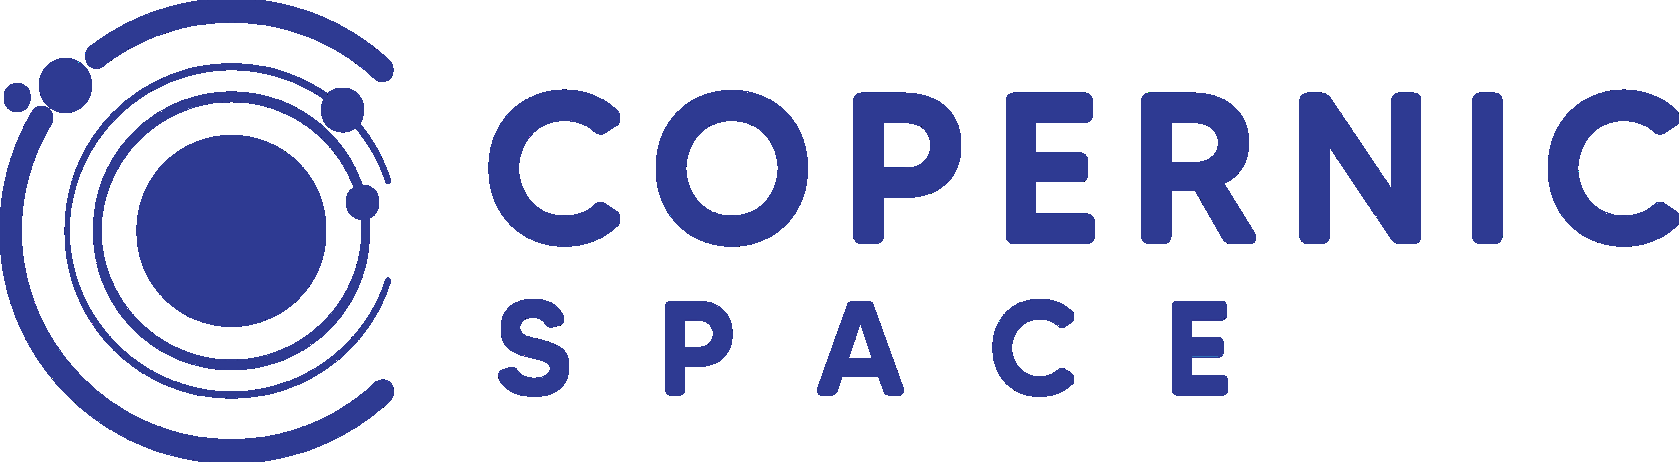 Copernic logo